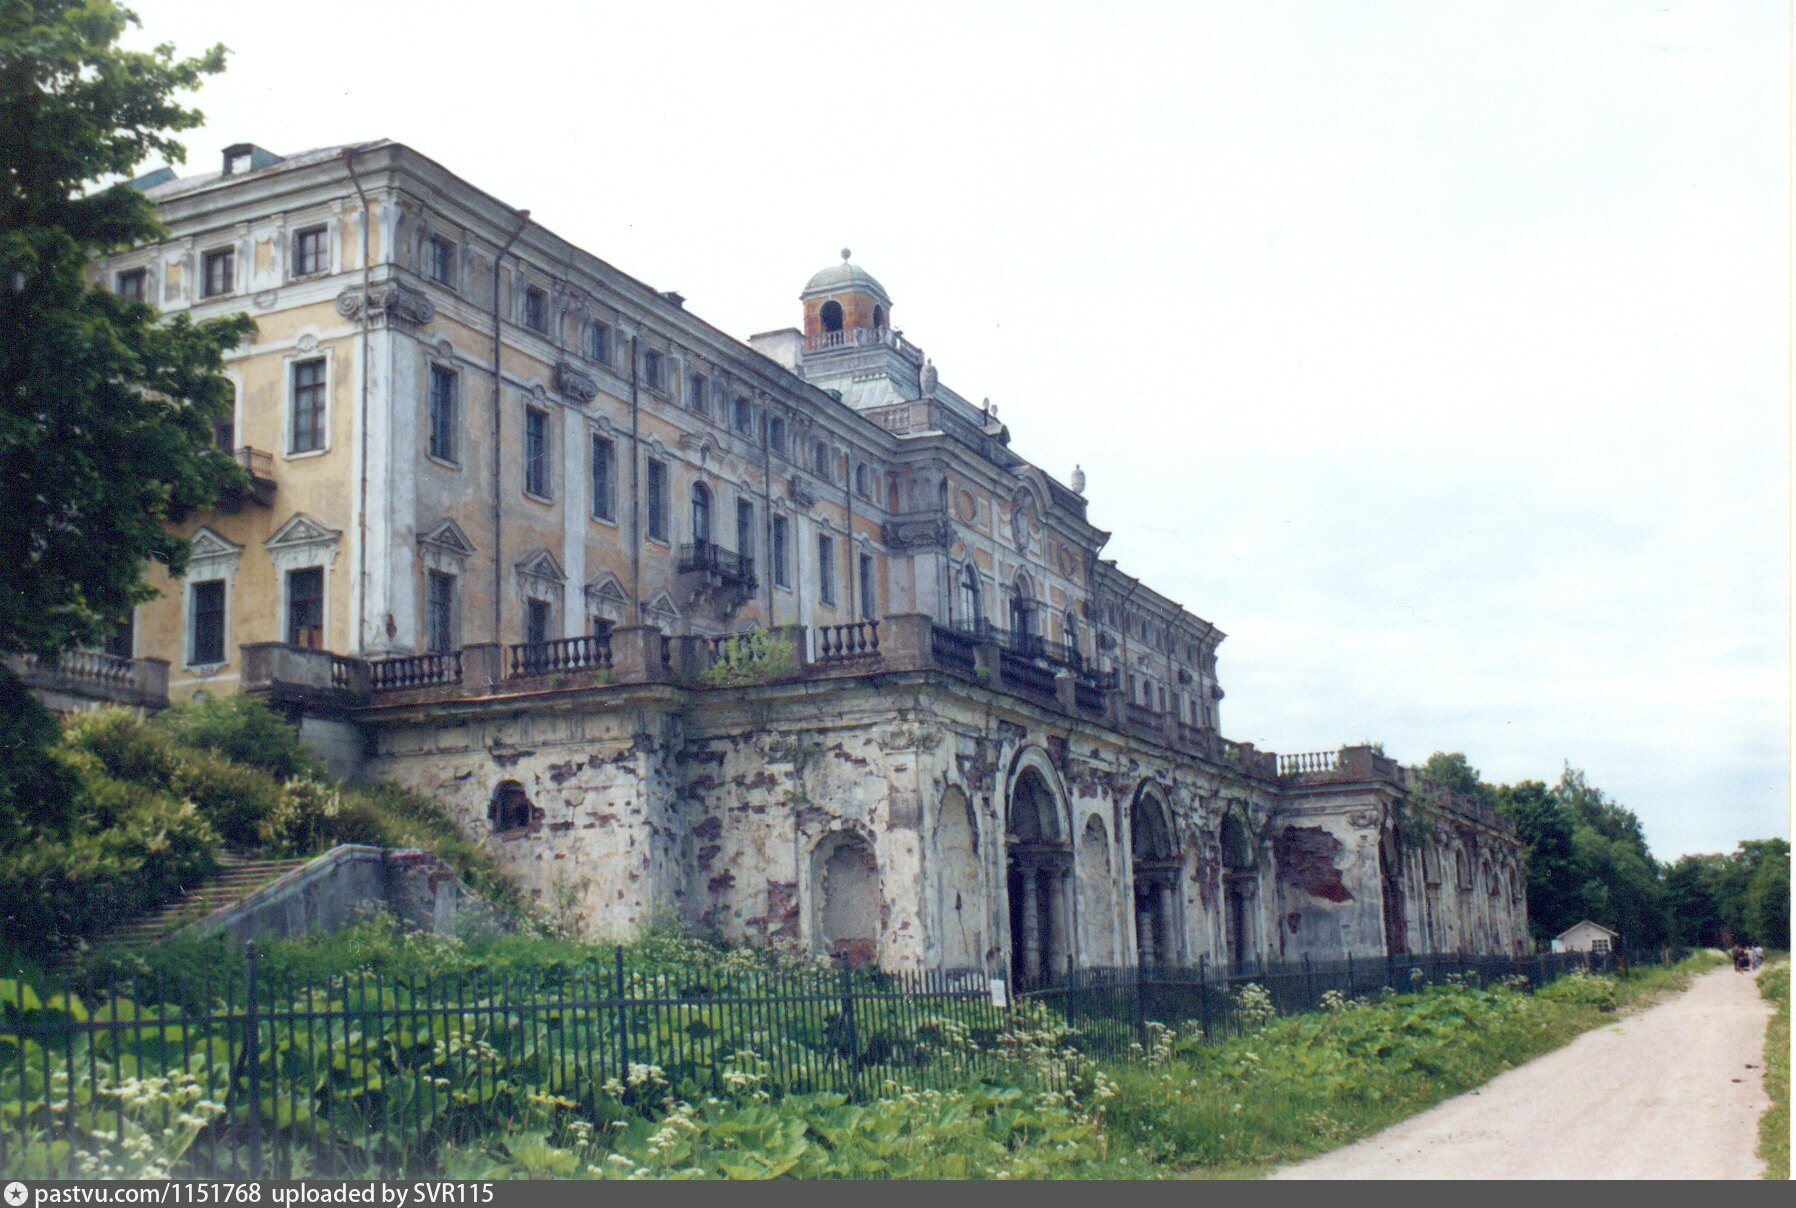 Стрельна Константиновский дворец до реконструкции